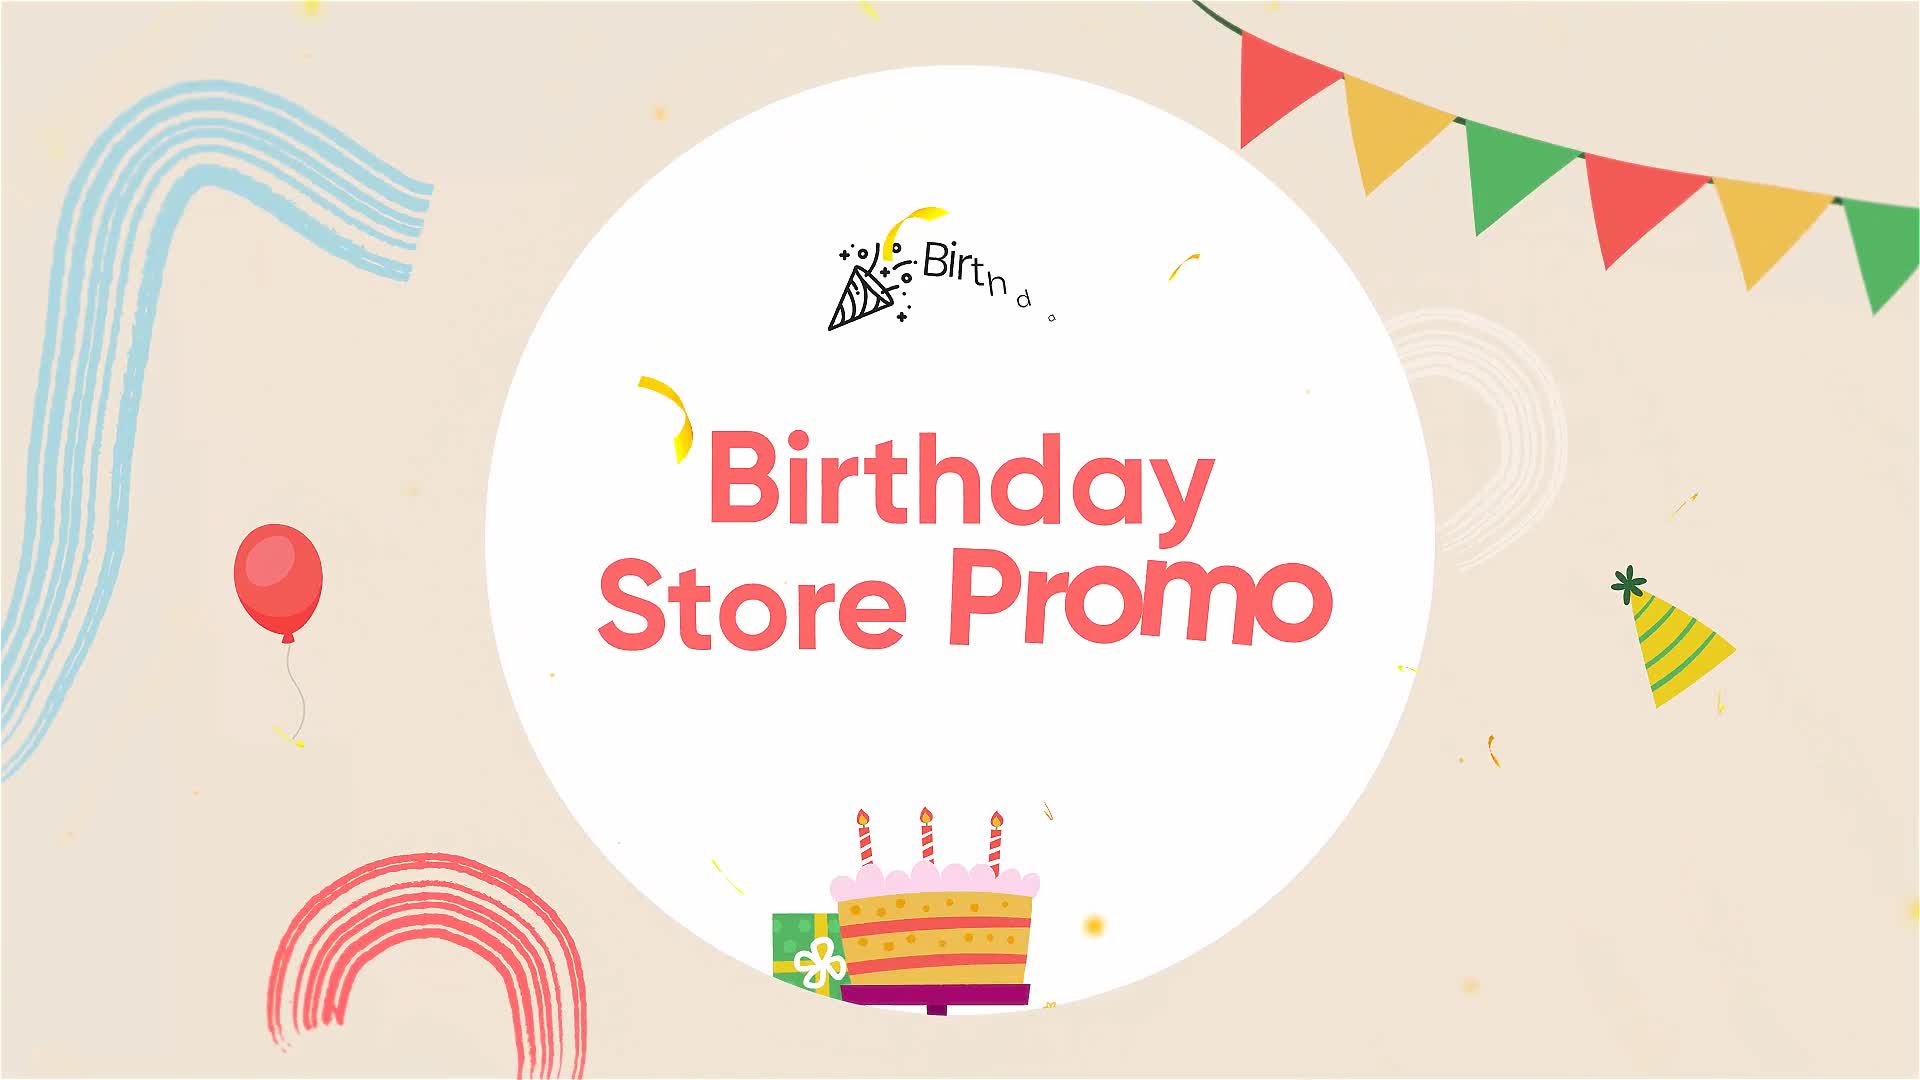 Birthday Store Promo Videohive 33715397 Premiere Pro Image 1